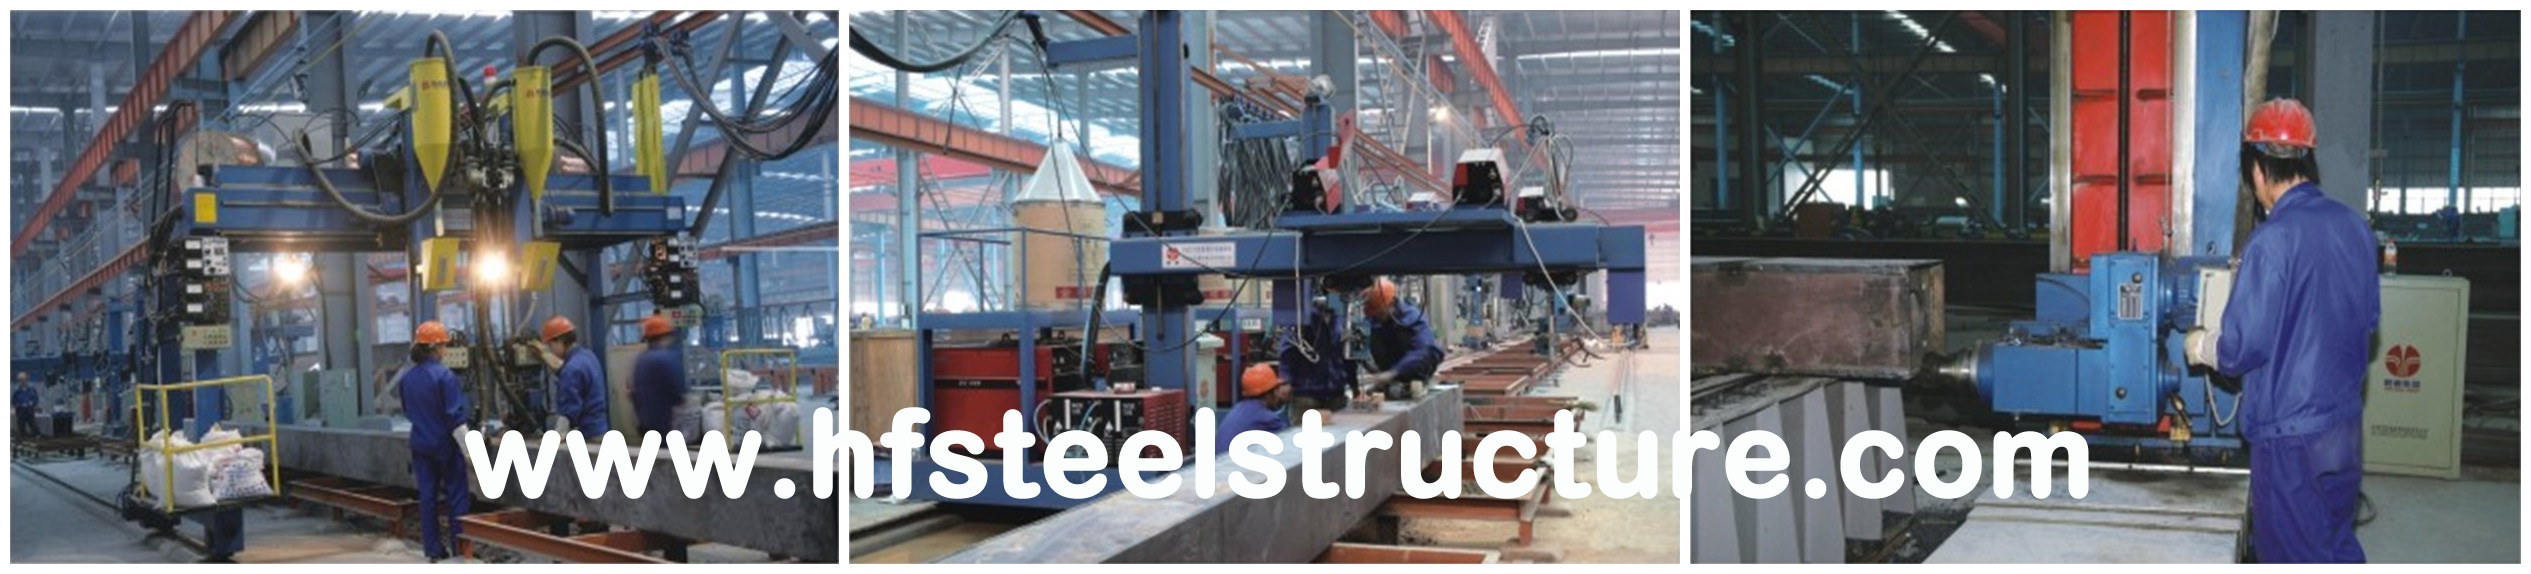 Industrielles vorfabriziertes Stahlrahmen-Fertiggebäude, mehrstöckiges Stahlgebäude